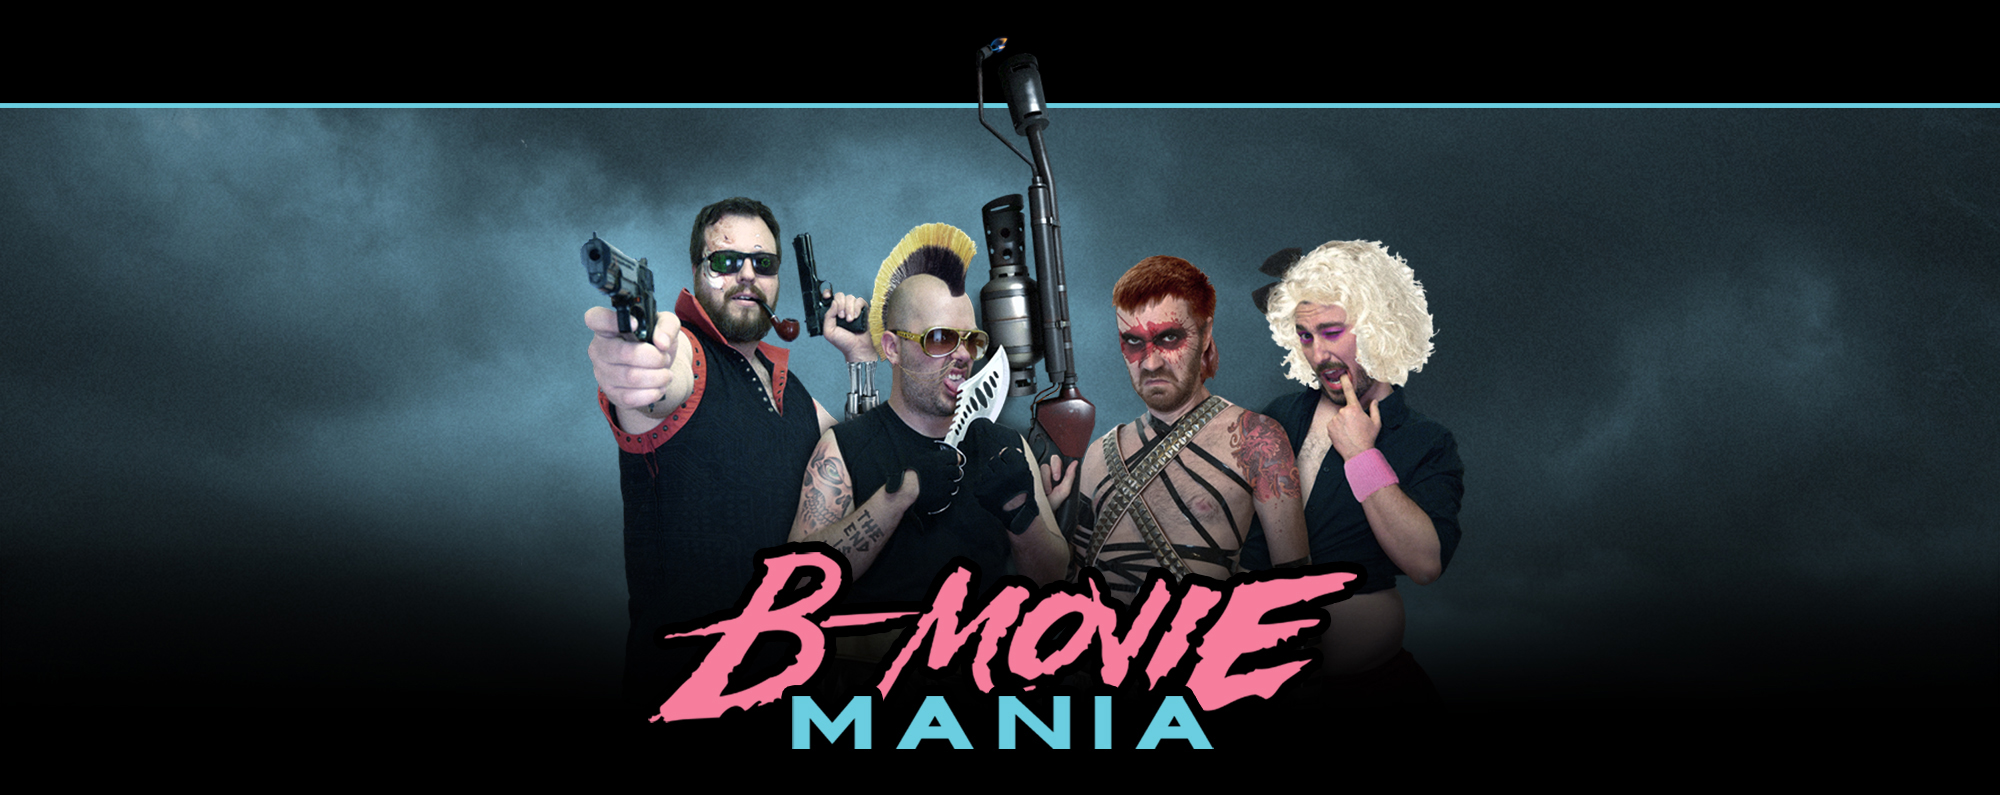 B-Movie Mania